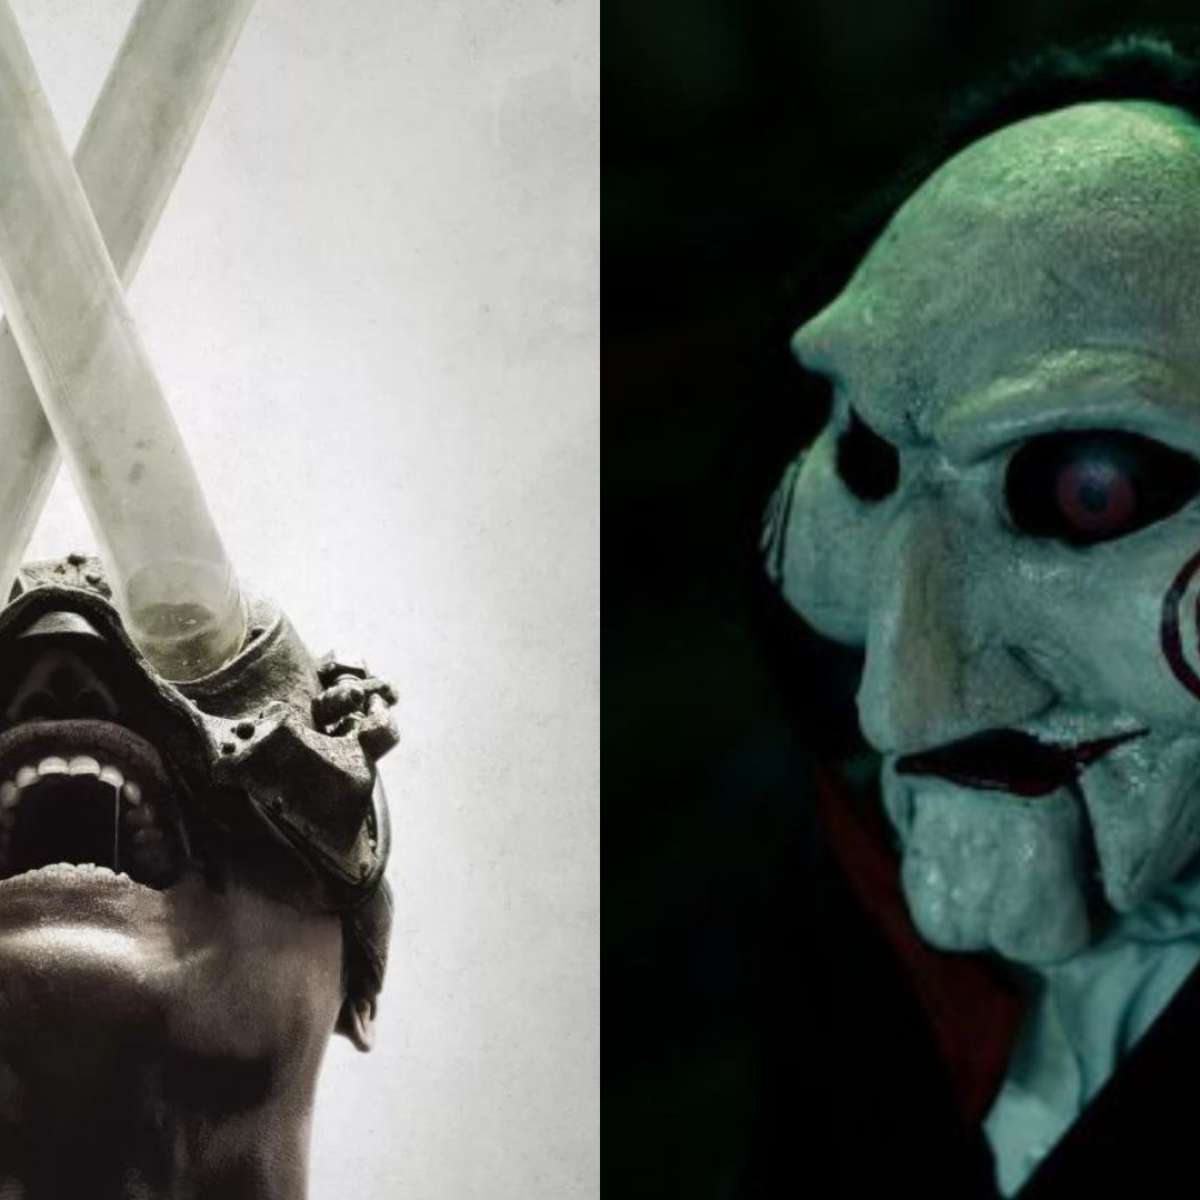 Empresa vai PAGAR mais de R$ 6 mil para alguém assistir aos filmes de terror  mais assustadores já feitos! - CinePOP